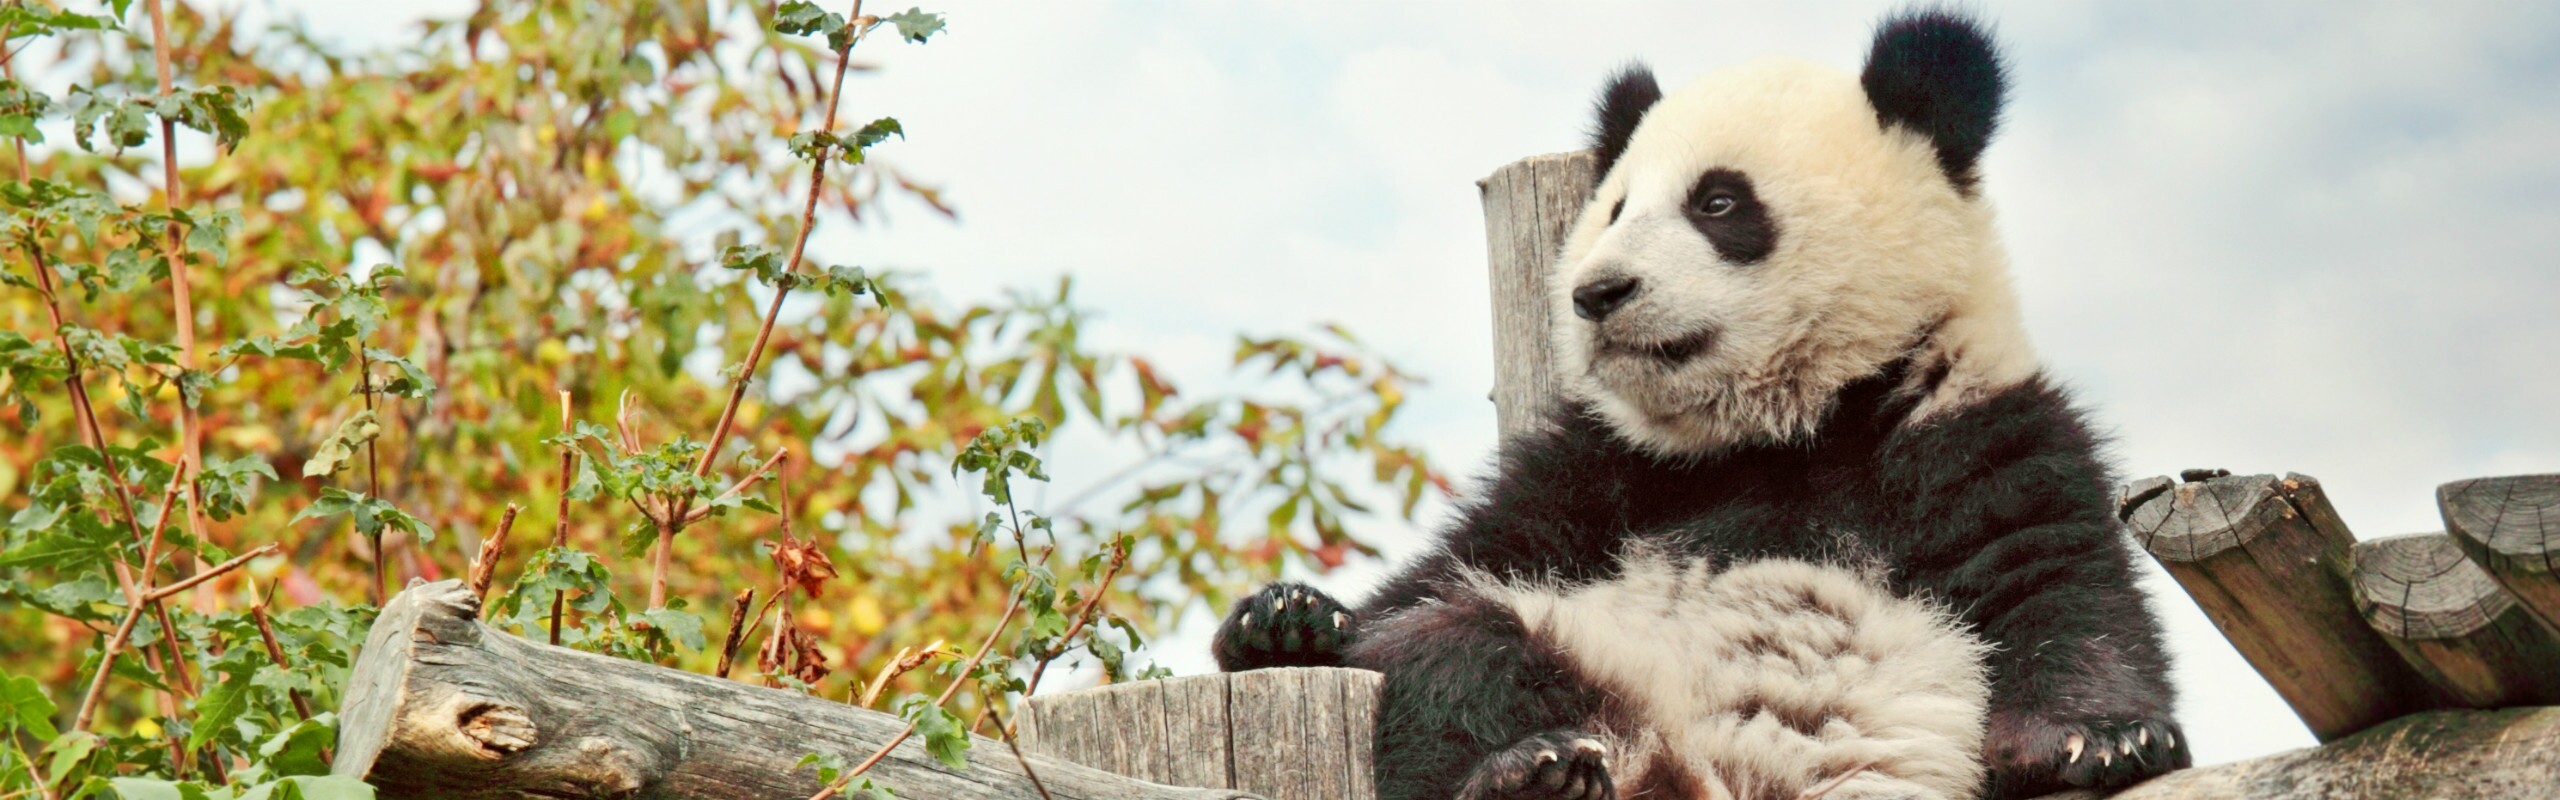 China Panda Tours